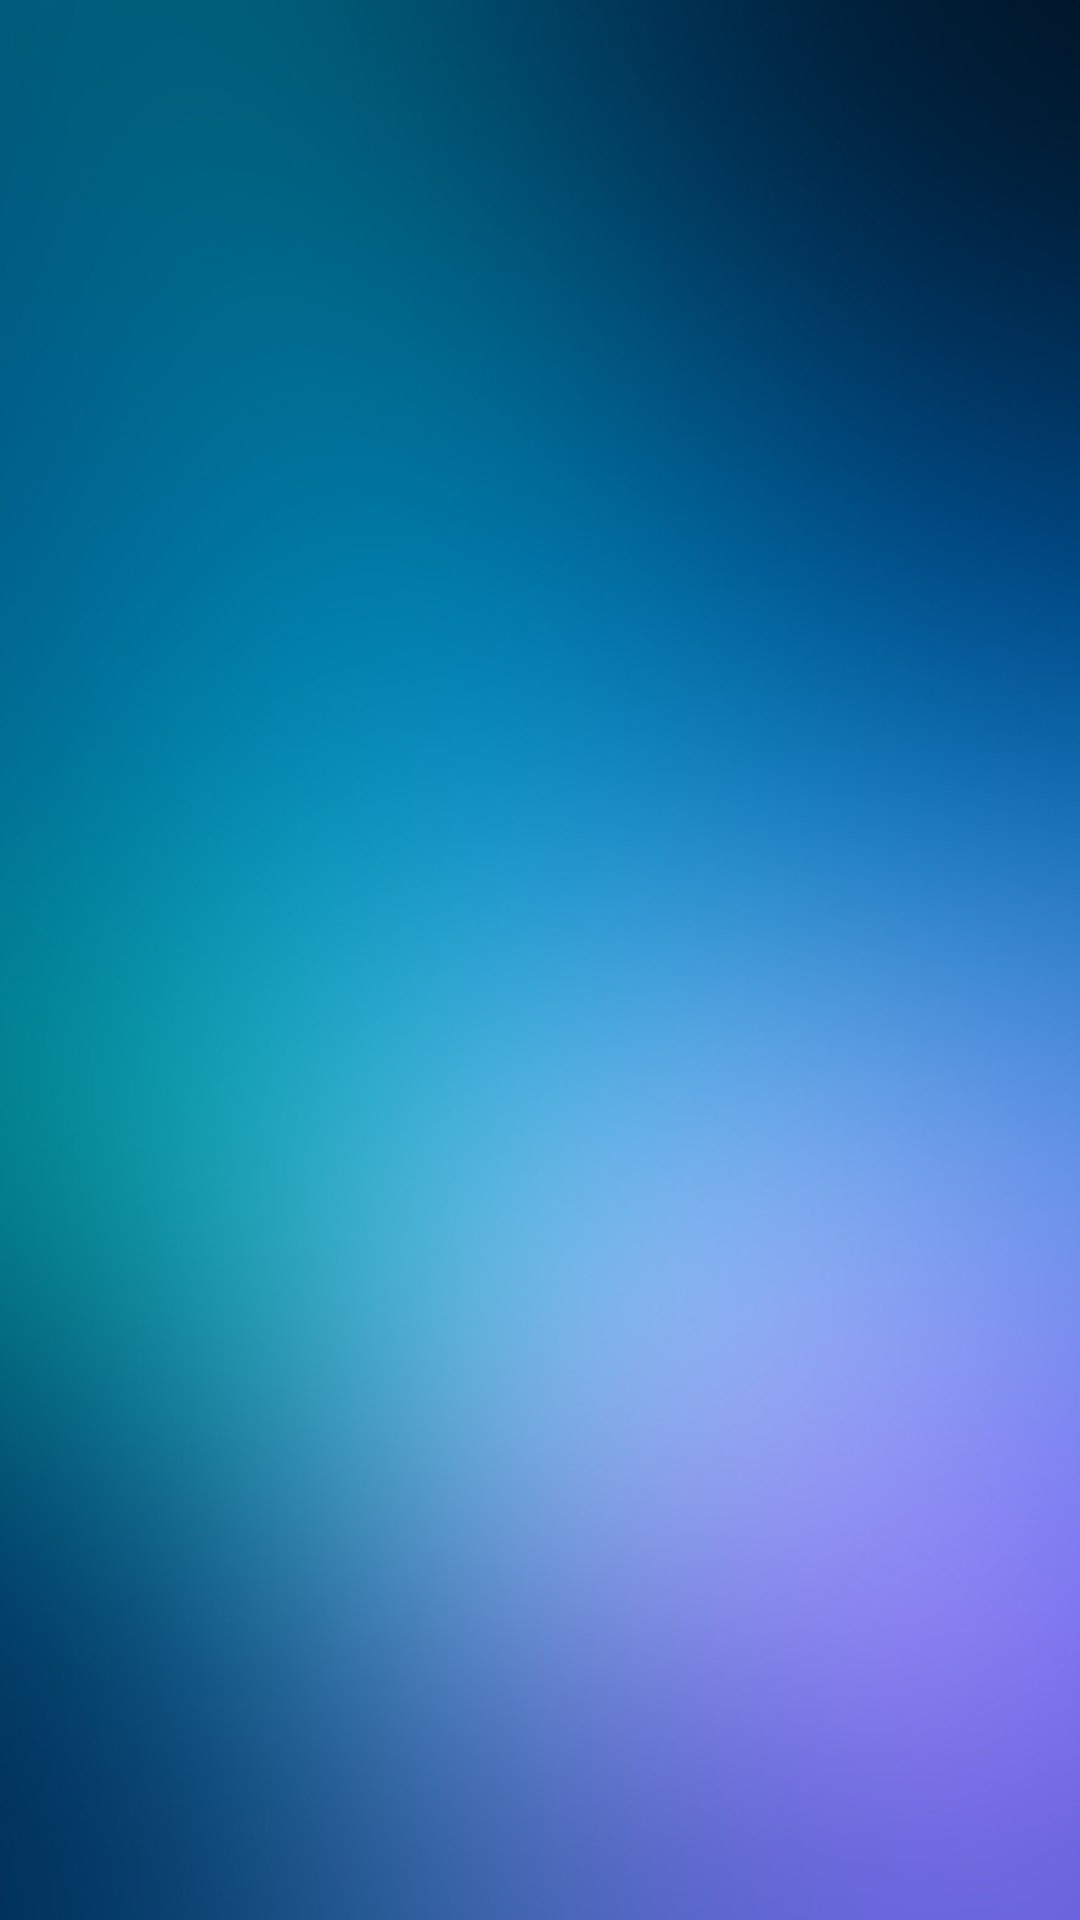 简约蓝色纯色背景手机壁纸,苹果5壁纸